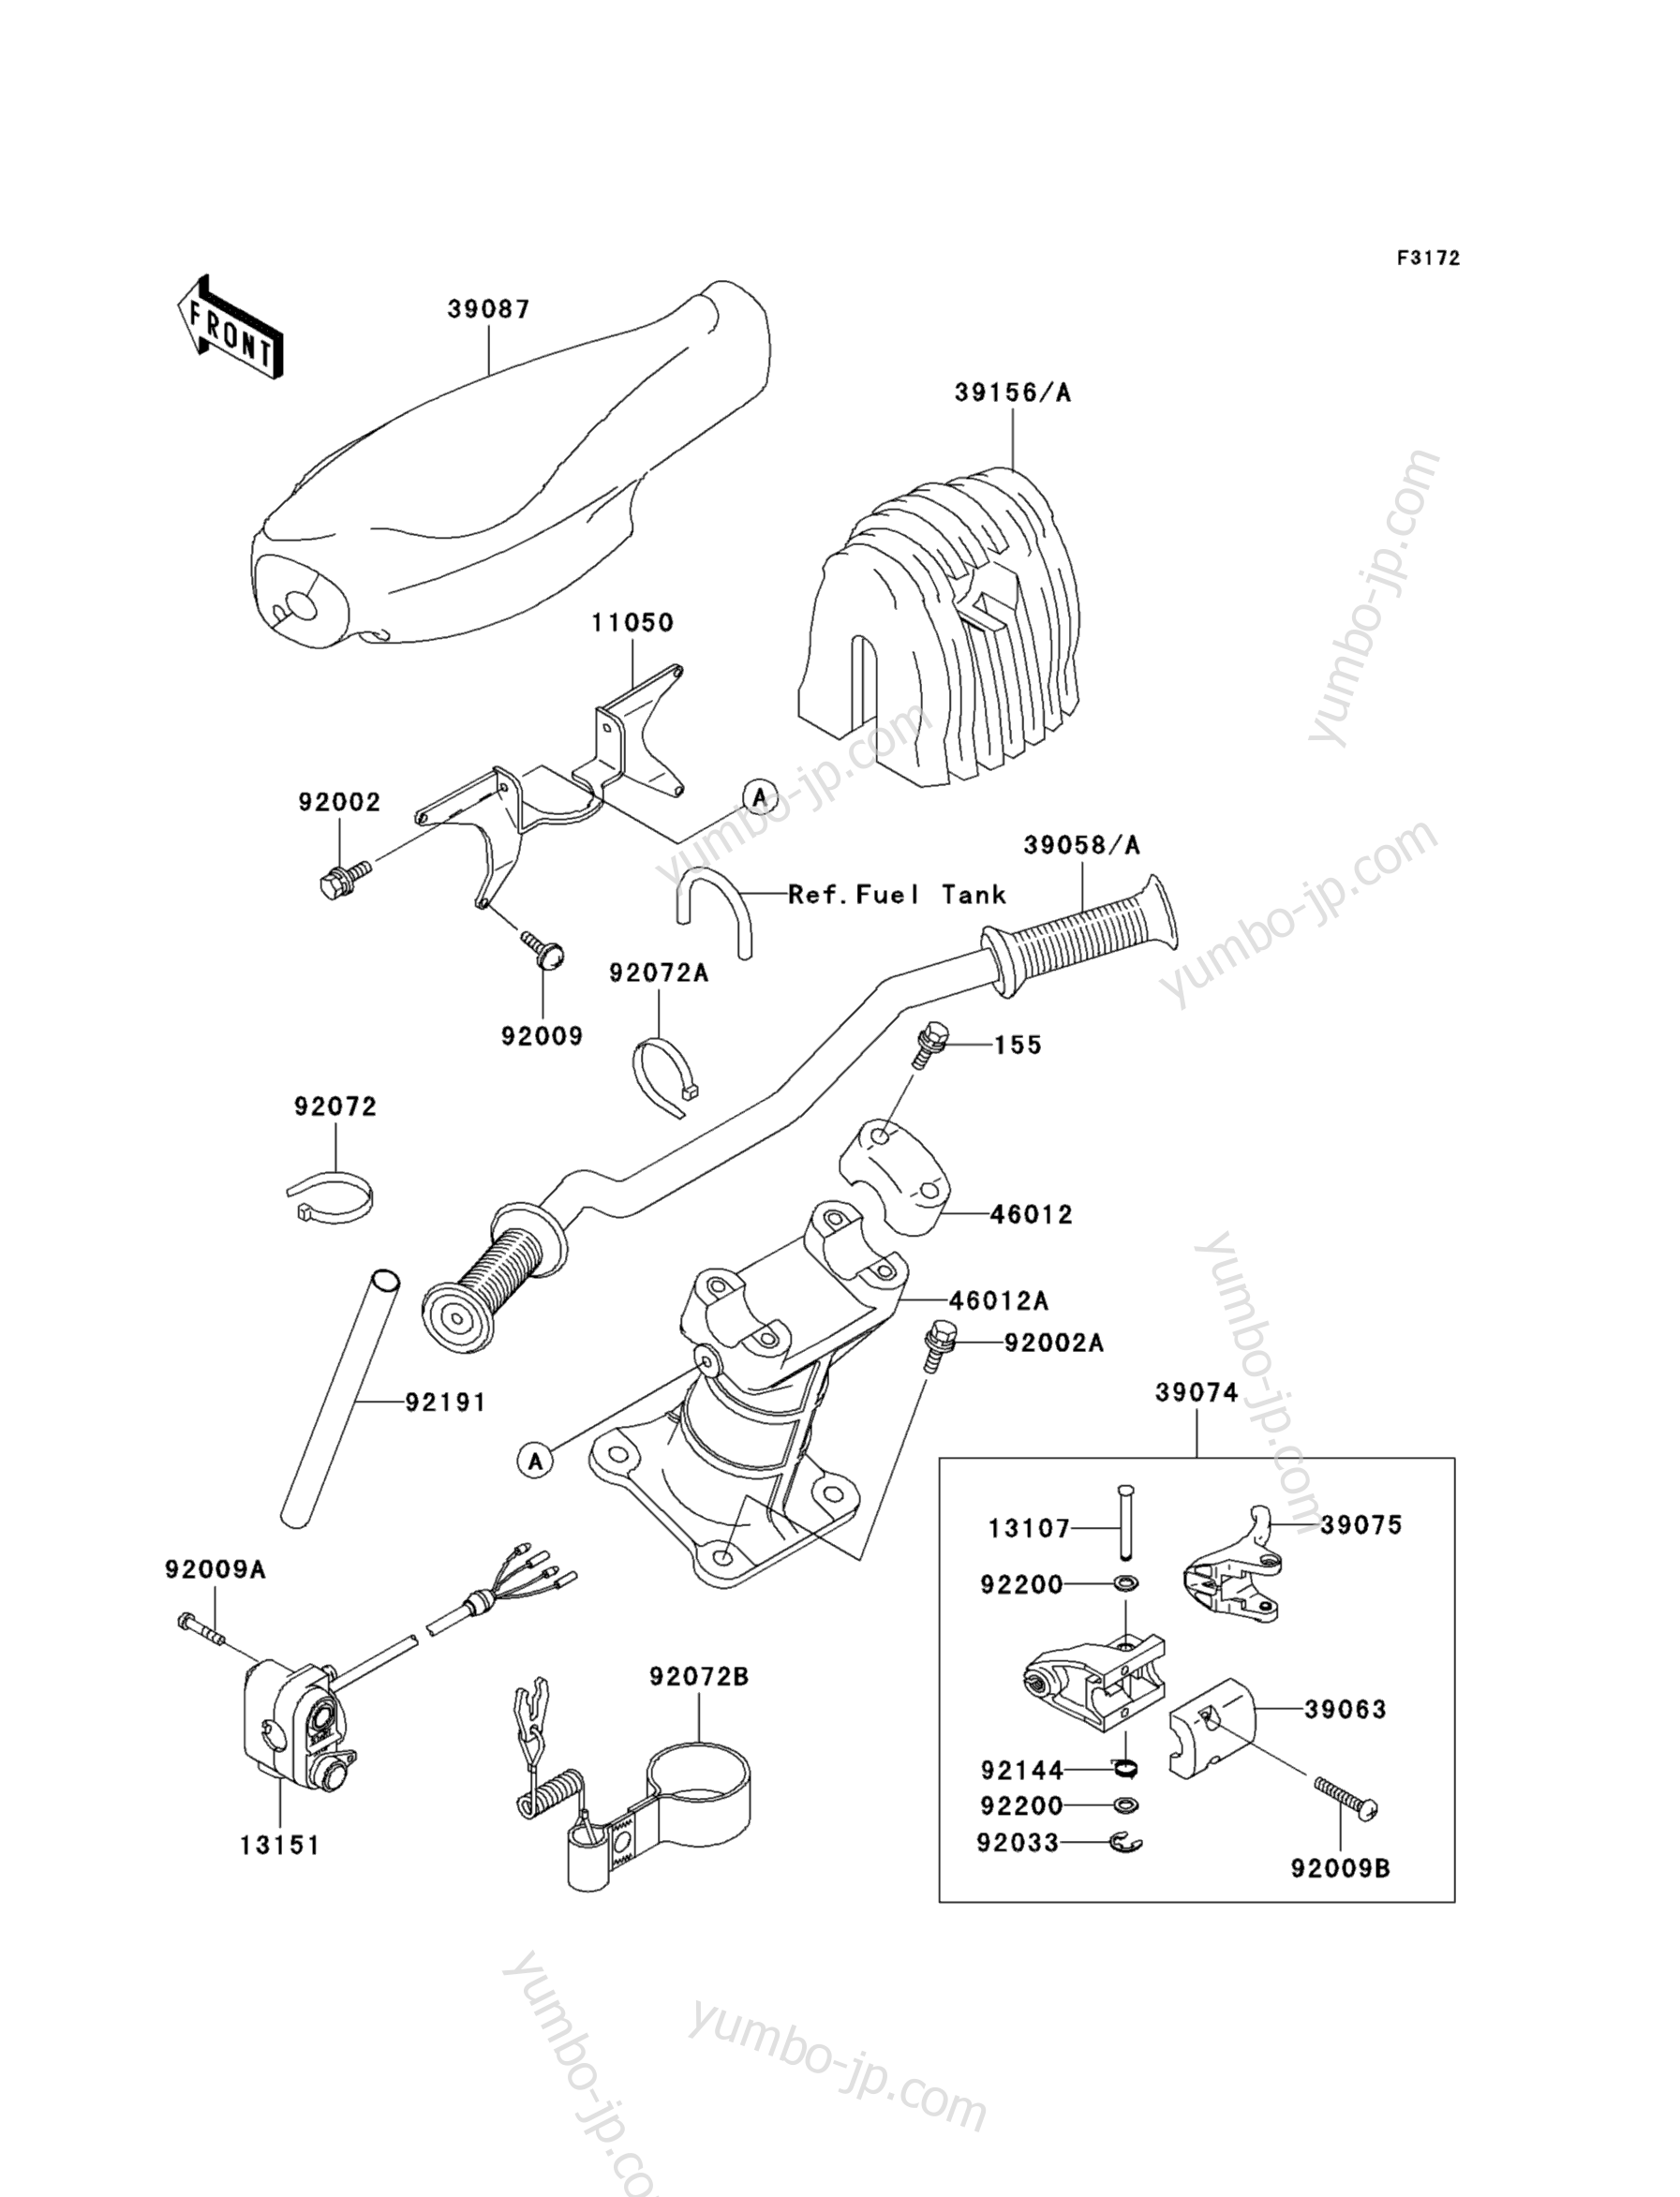 Румпель (рукоятка управления) для гидроциклов KAWASAKI JET SKI 1100 STX D.I. (JT1100-F1) 2001 г.